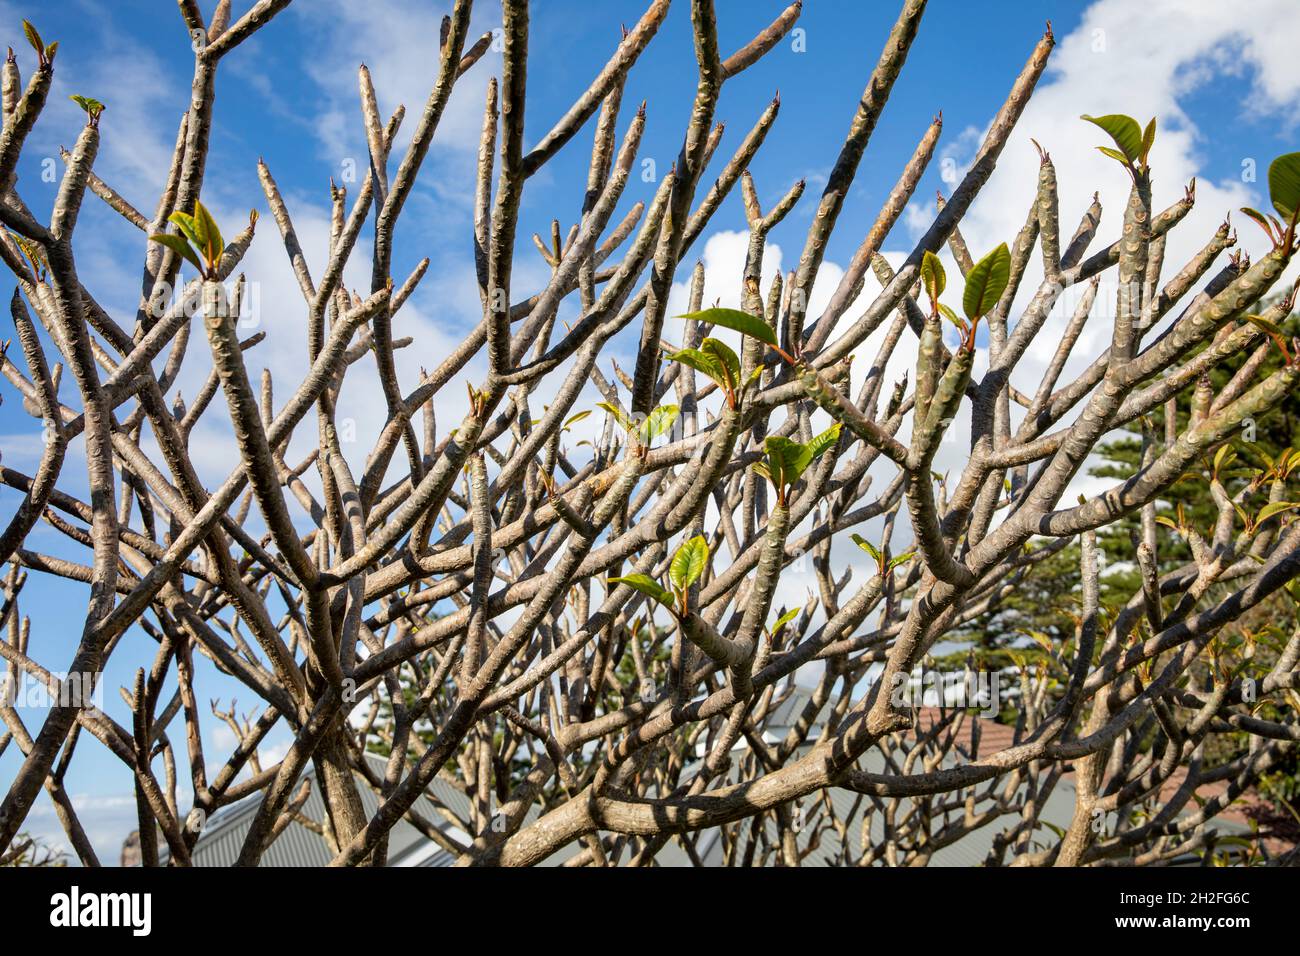 Frangipani albero, plumeria, in un giorno di primavera a Sydney, con nuovi germogli e germogli emergenti, Sydney, Australia Foto Stock